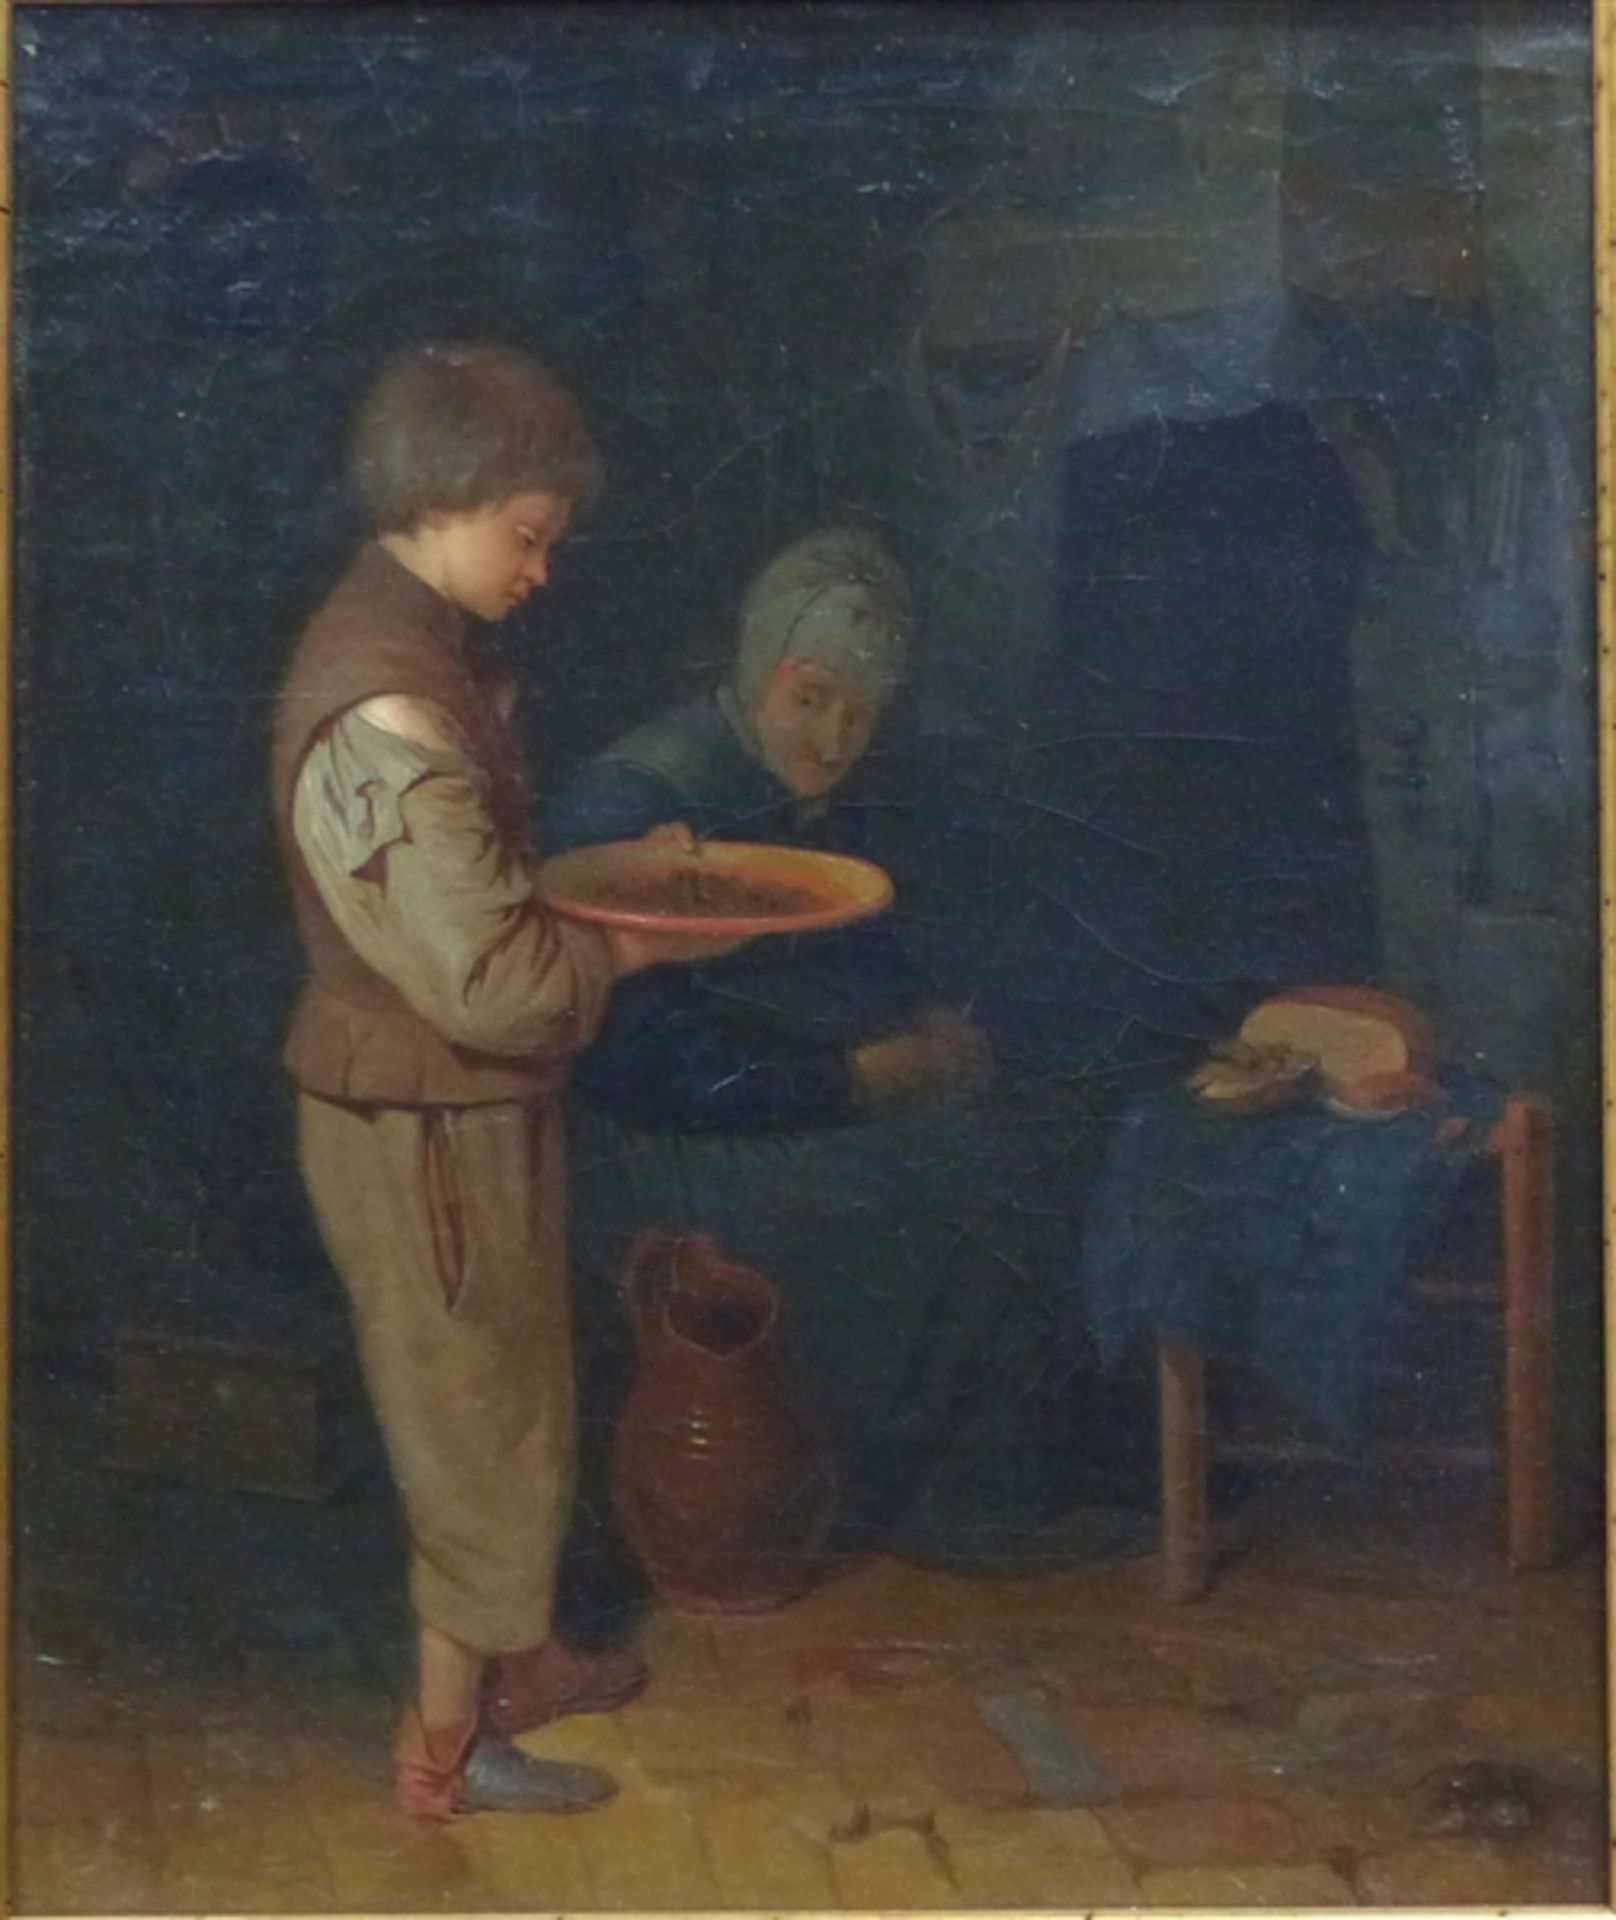 Holland, um 1800 Öl auf Leinen, doubliert, Interieurszene, Grossmutter und ein Junge in der Küche am